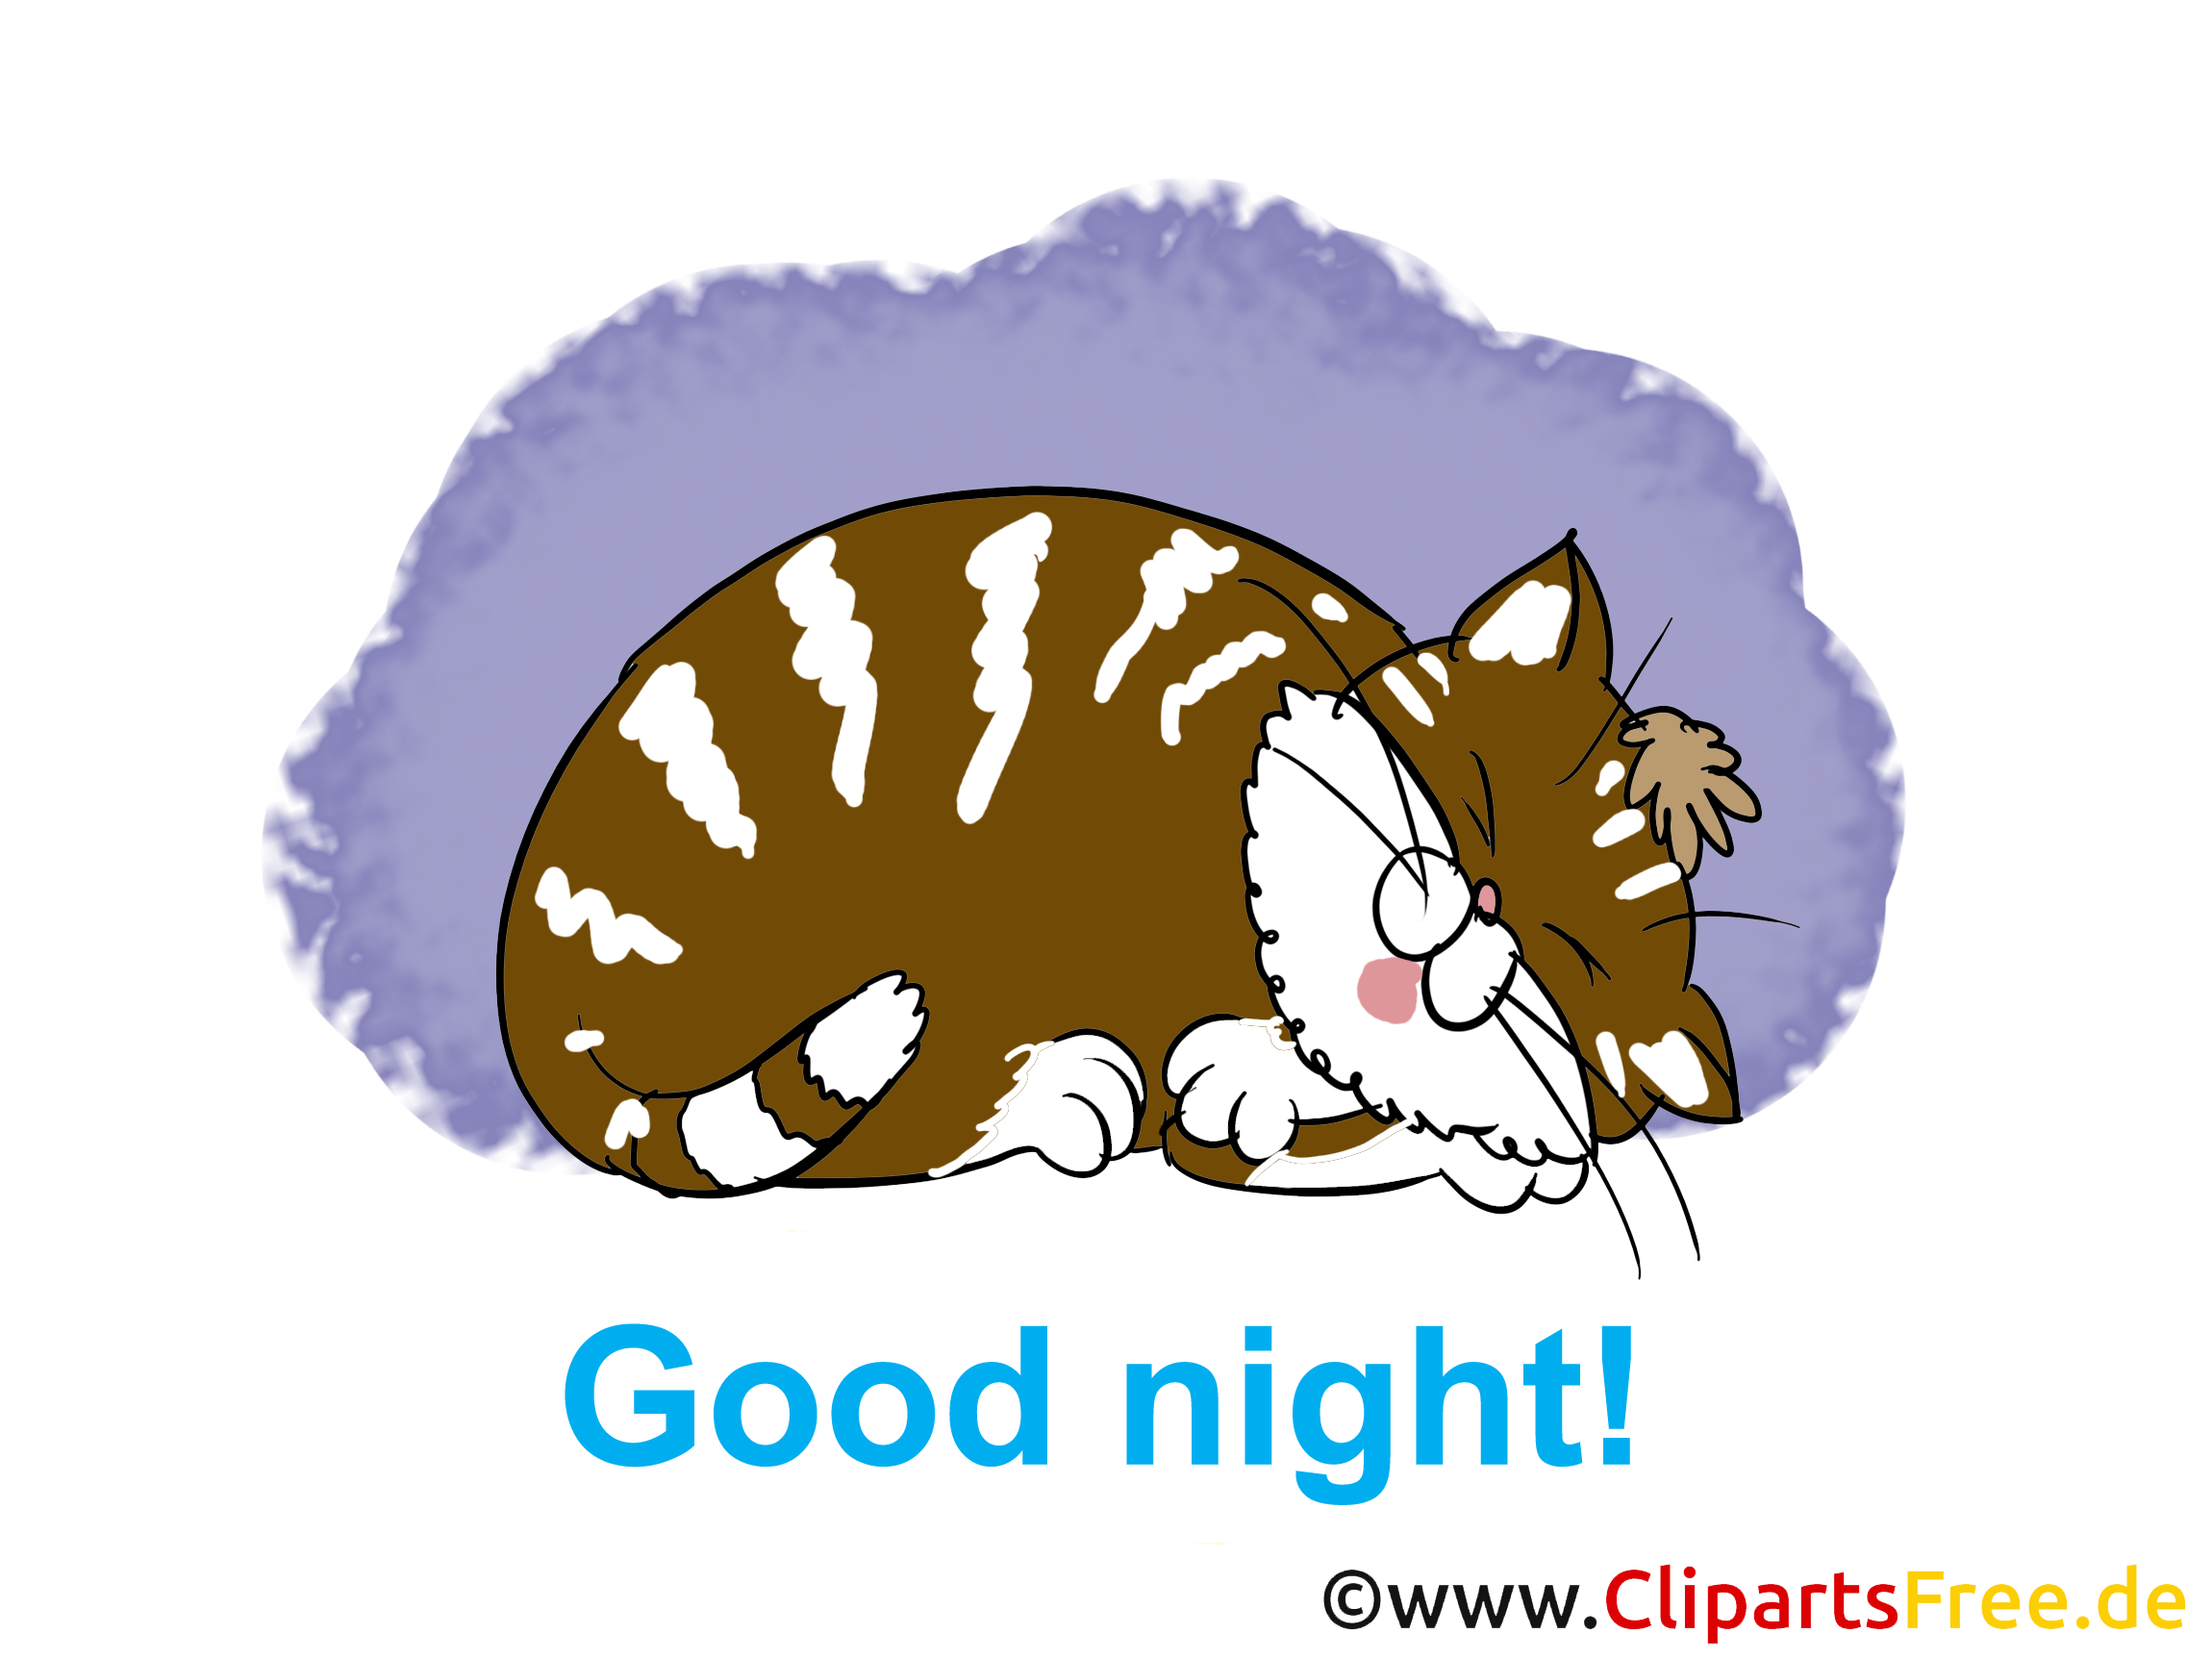 Dessin gratuit chat - Bonne nuit image